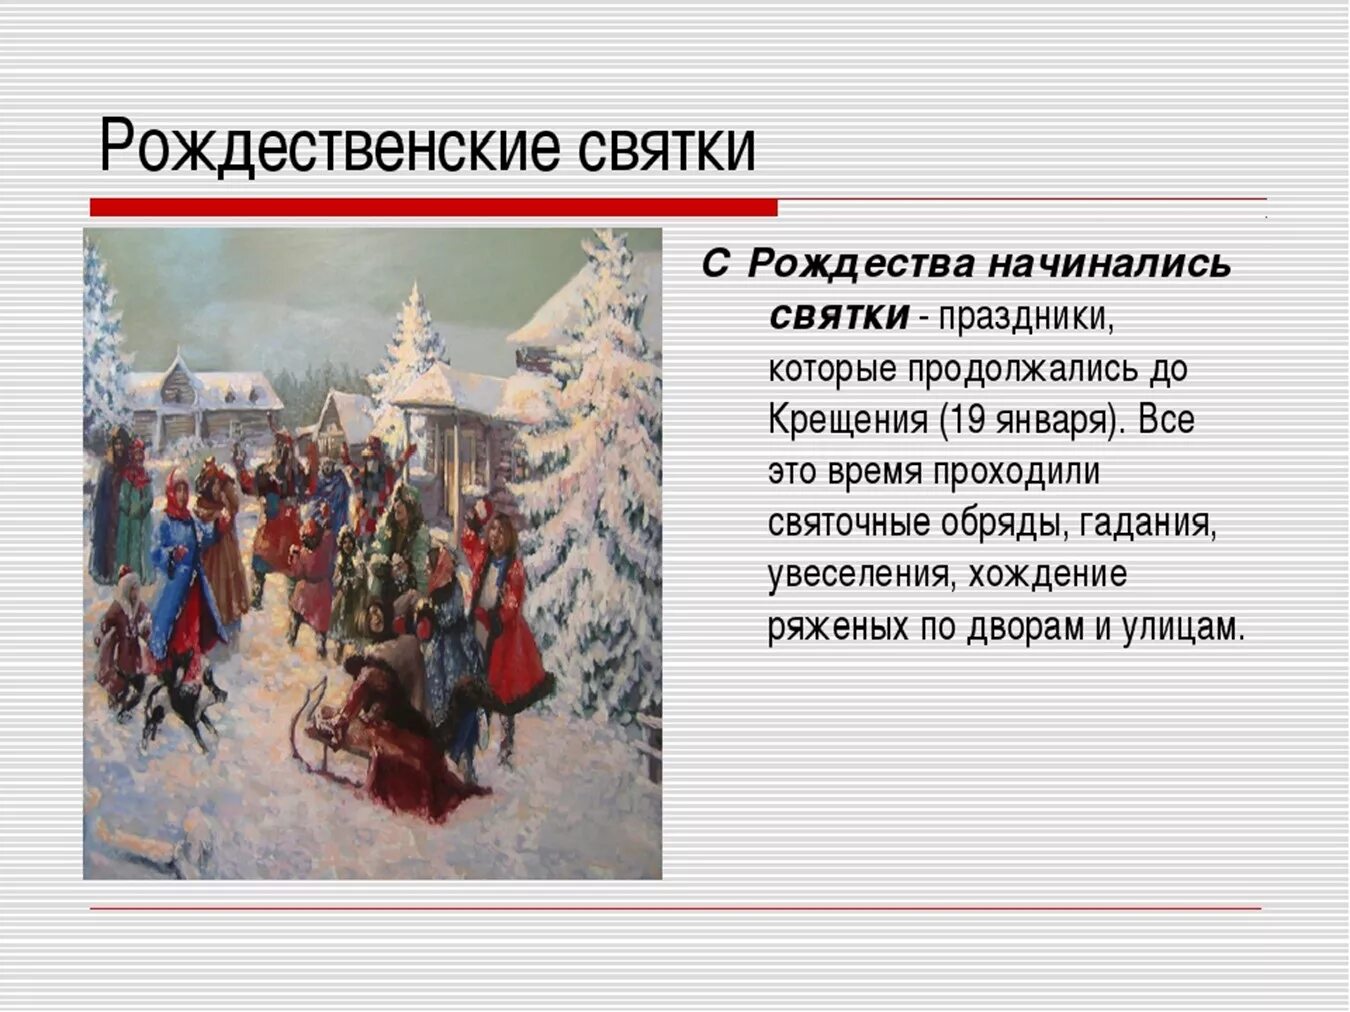 Почему народ россии приветствовал это событие. Русские обряды и праздники. Народные праздники обычаи обряды. Традиционные зимние праздники. Тема русские народные праздники.